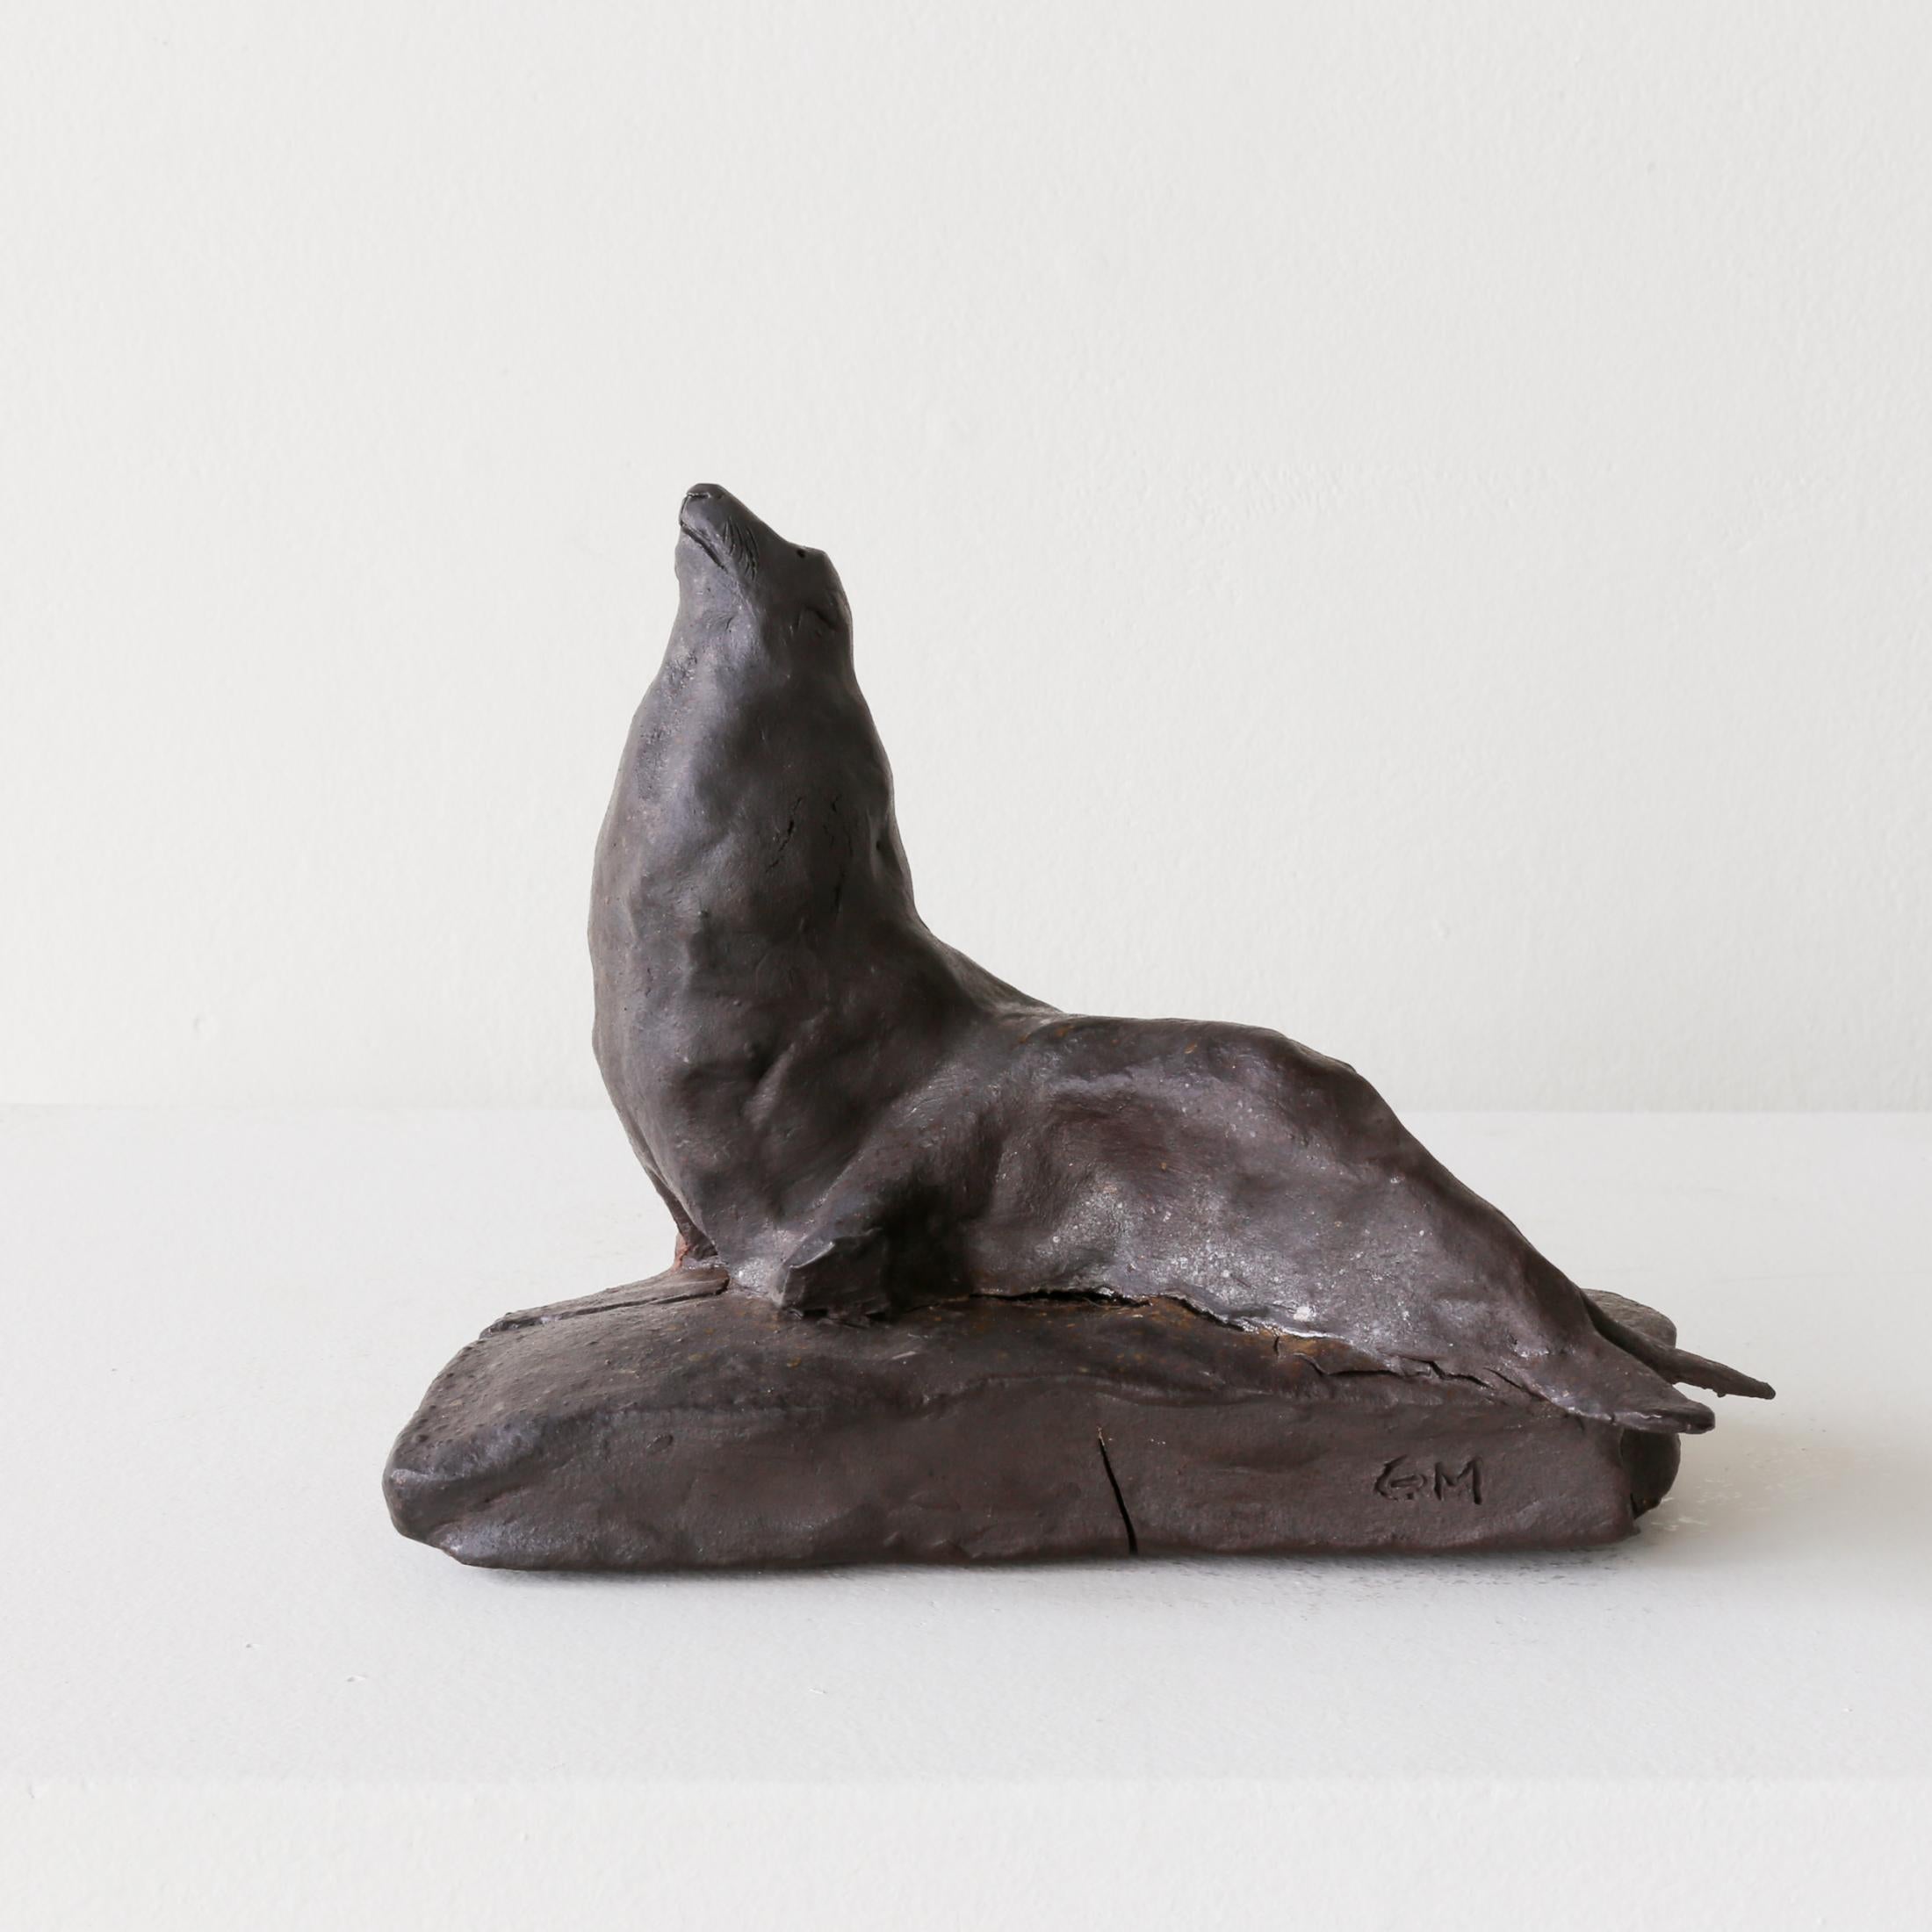 Seelöwenbulle – Sculpture von Gigi Mills